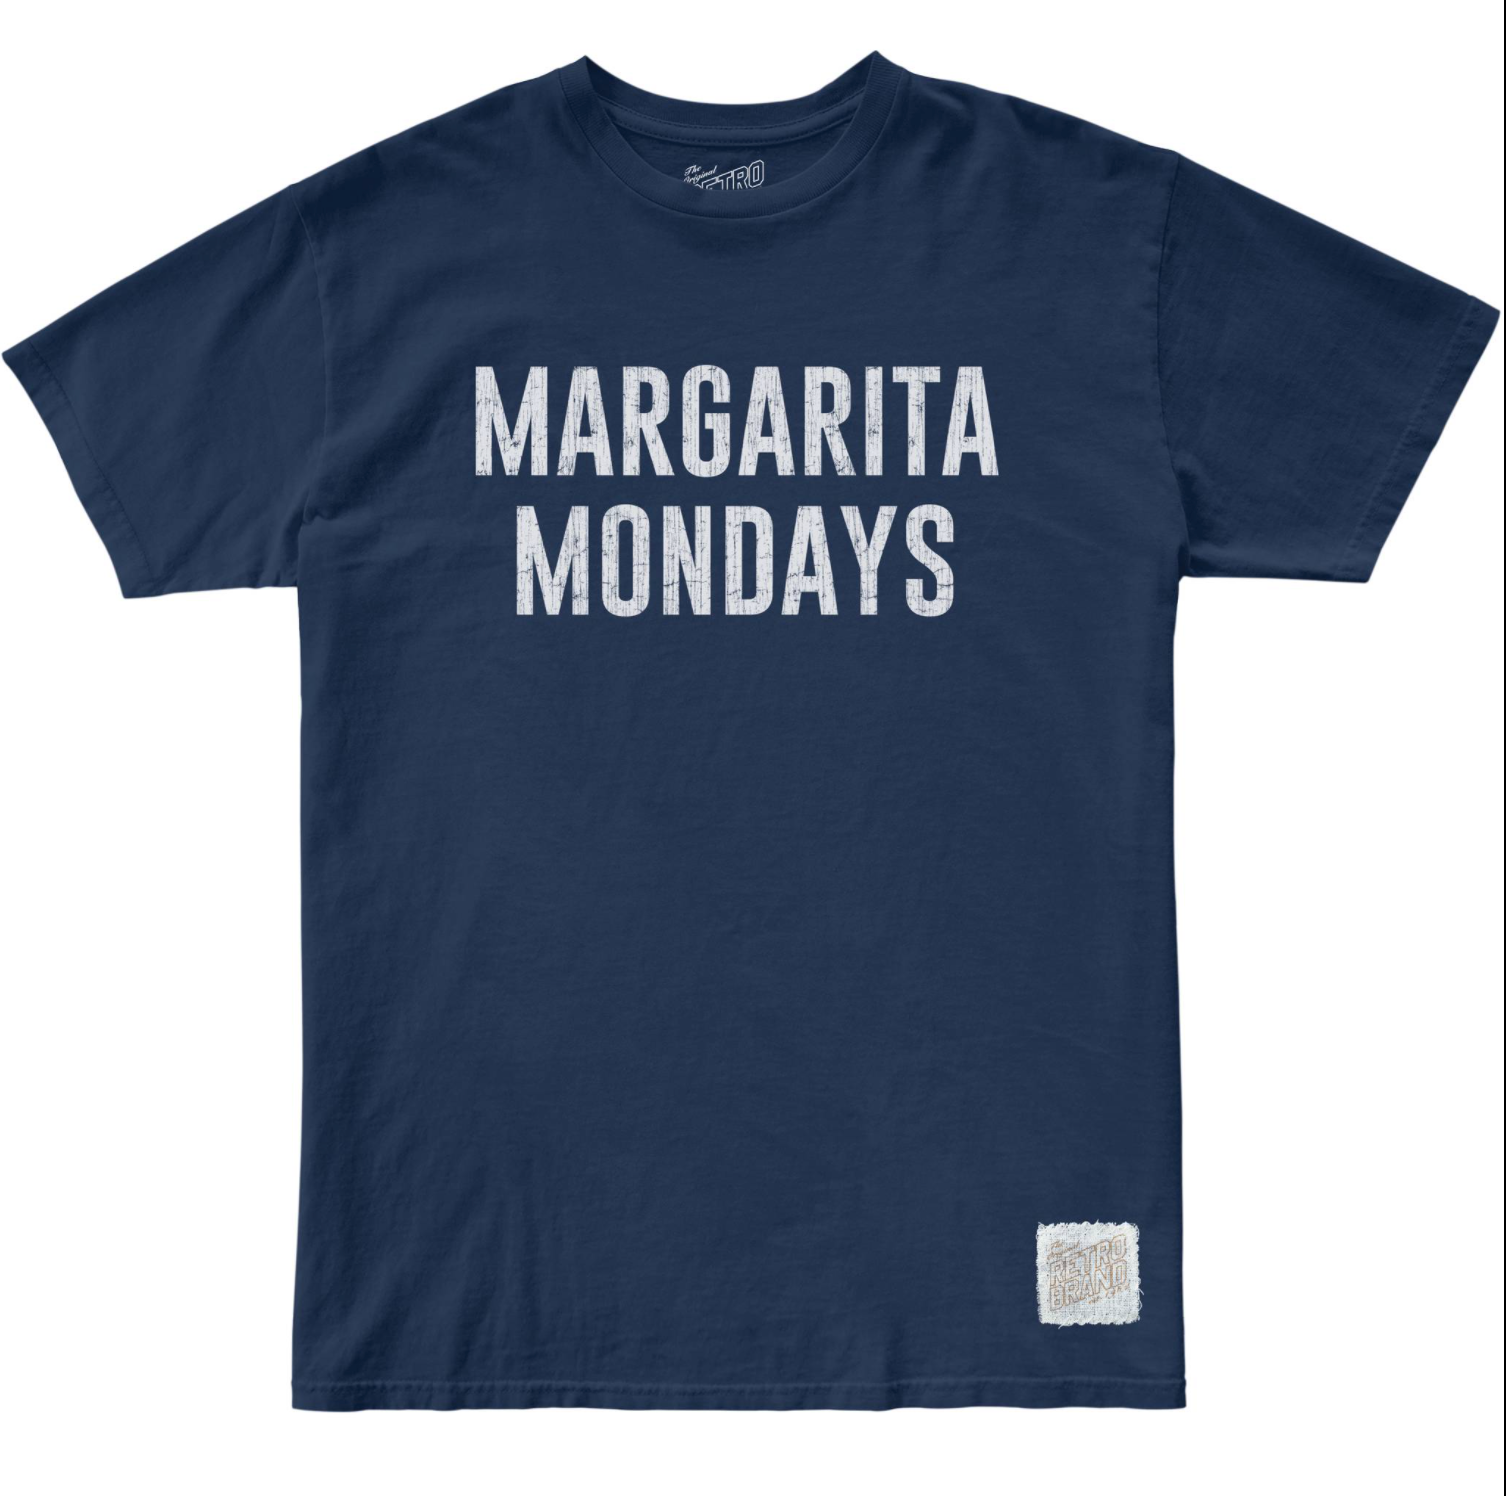 Margarita Mondays 100% Cotton Unisex Tee